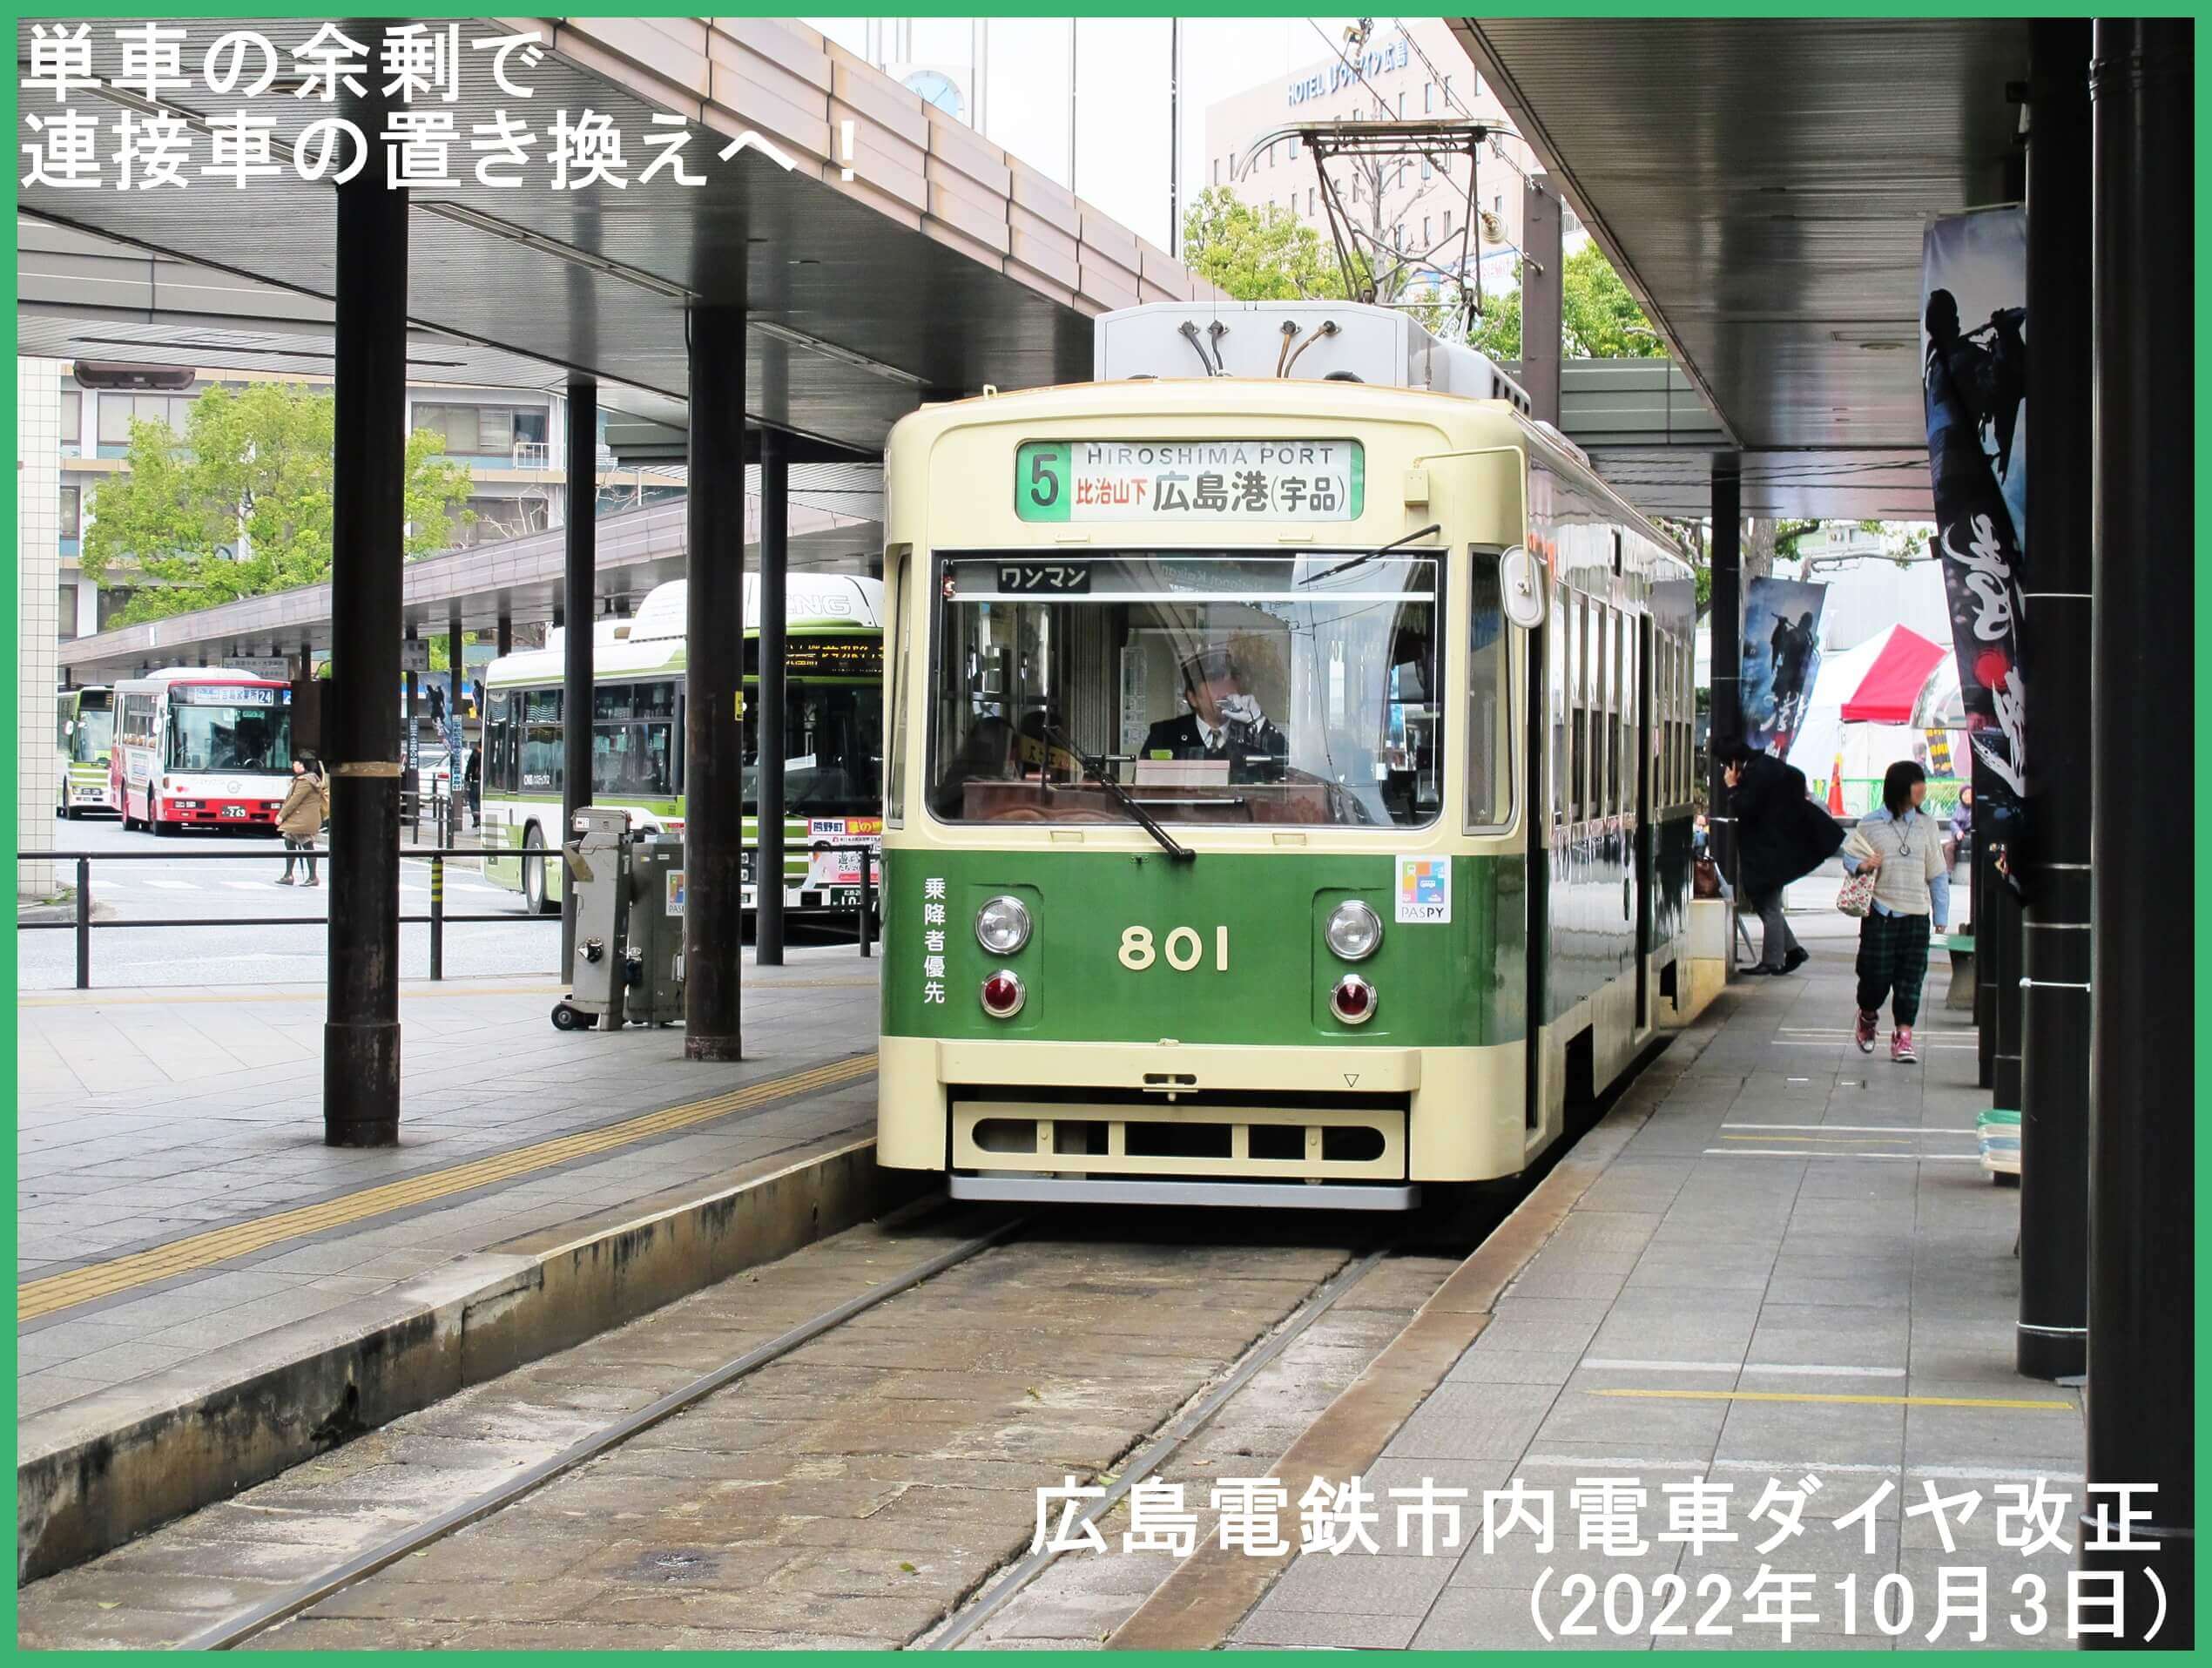 単車の余剰で連接車の置き換えへ！　広島電鉄市内電車ダイヤ改正(2022年10月3日)